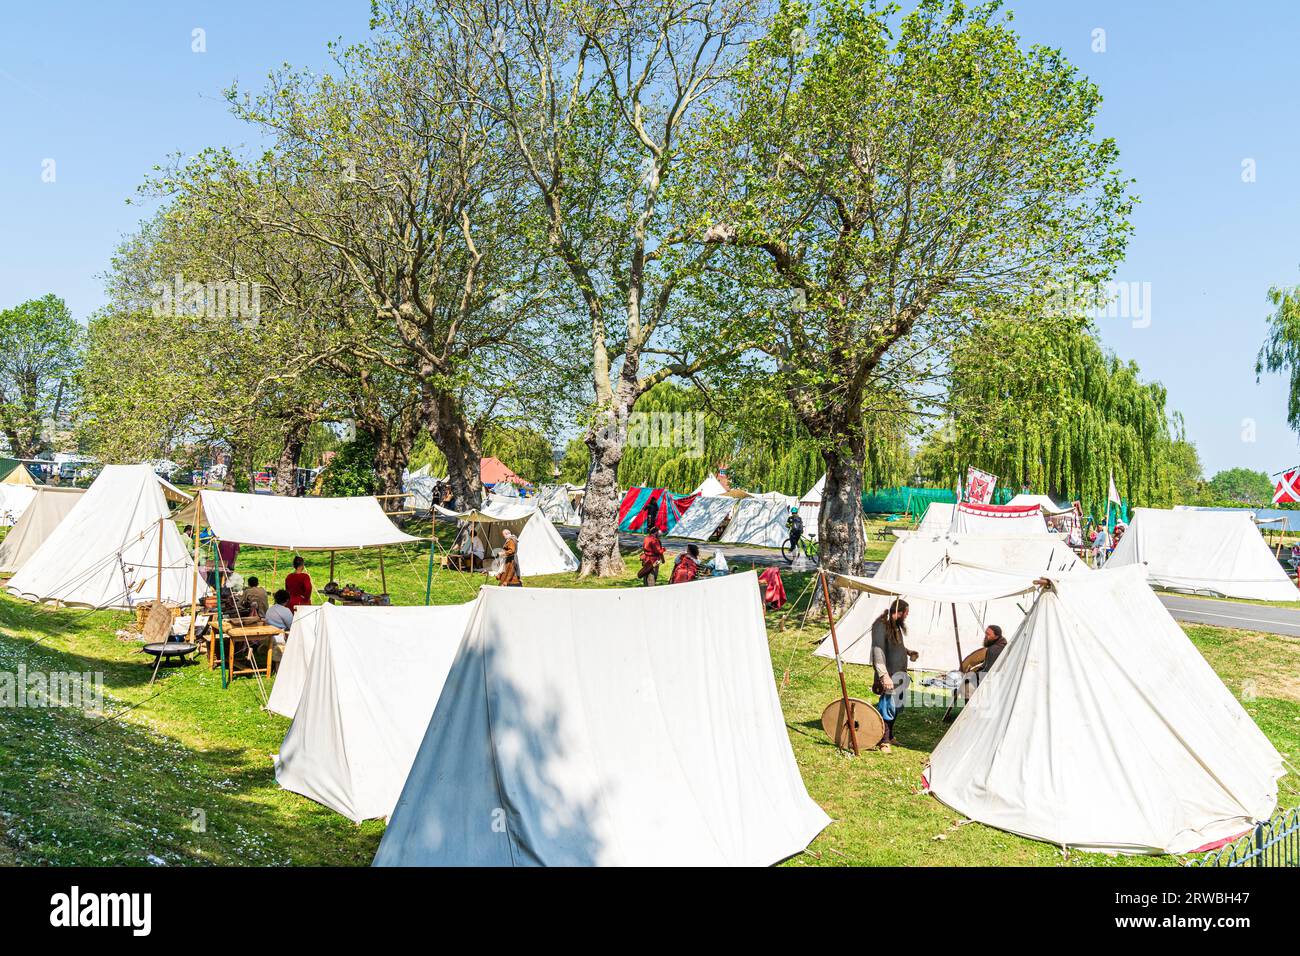 Mittelalterliches Lager für lebendige Geschichte am Flussufer Green in der Stadt Kent in Sandwich. Weiße und farbige Zelte, die unter Bäumen in der Sonne aufgestellt werden. Stockfoto